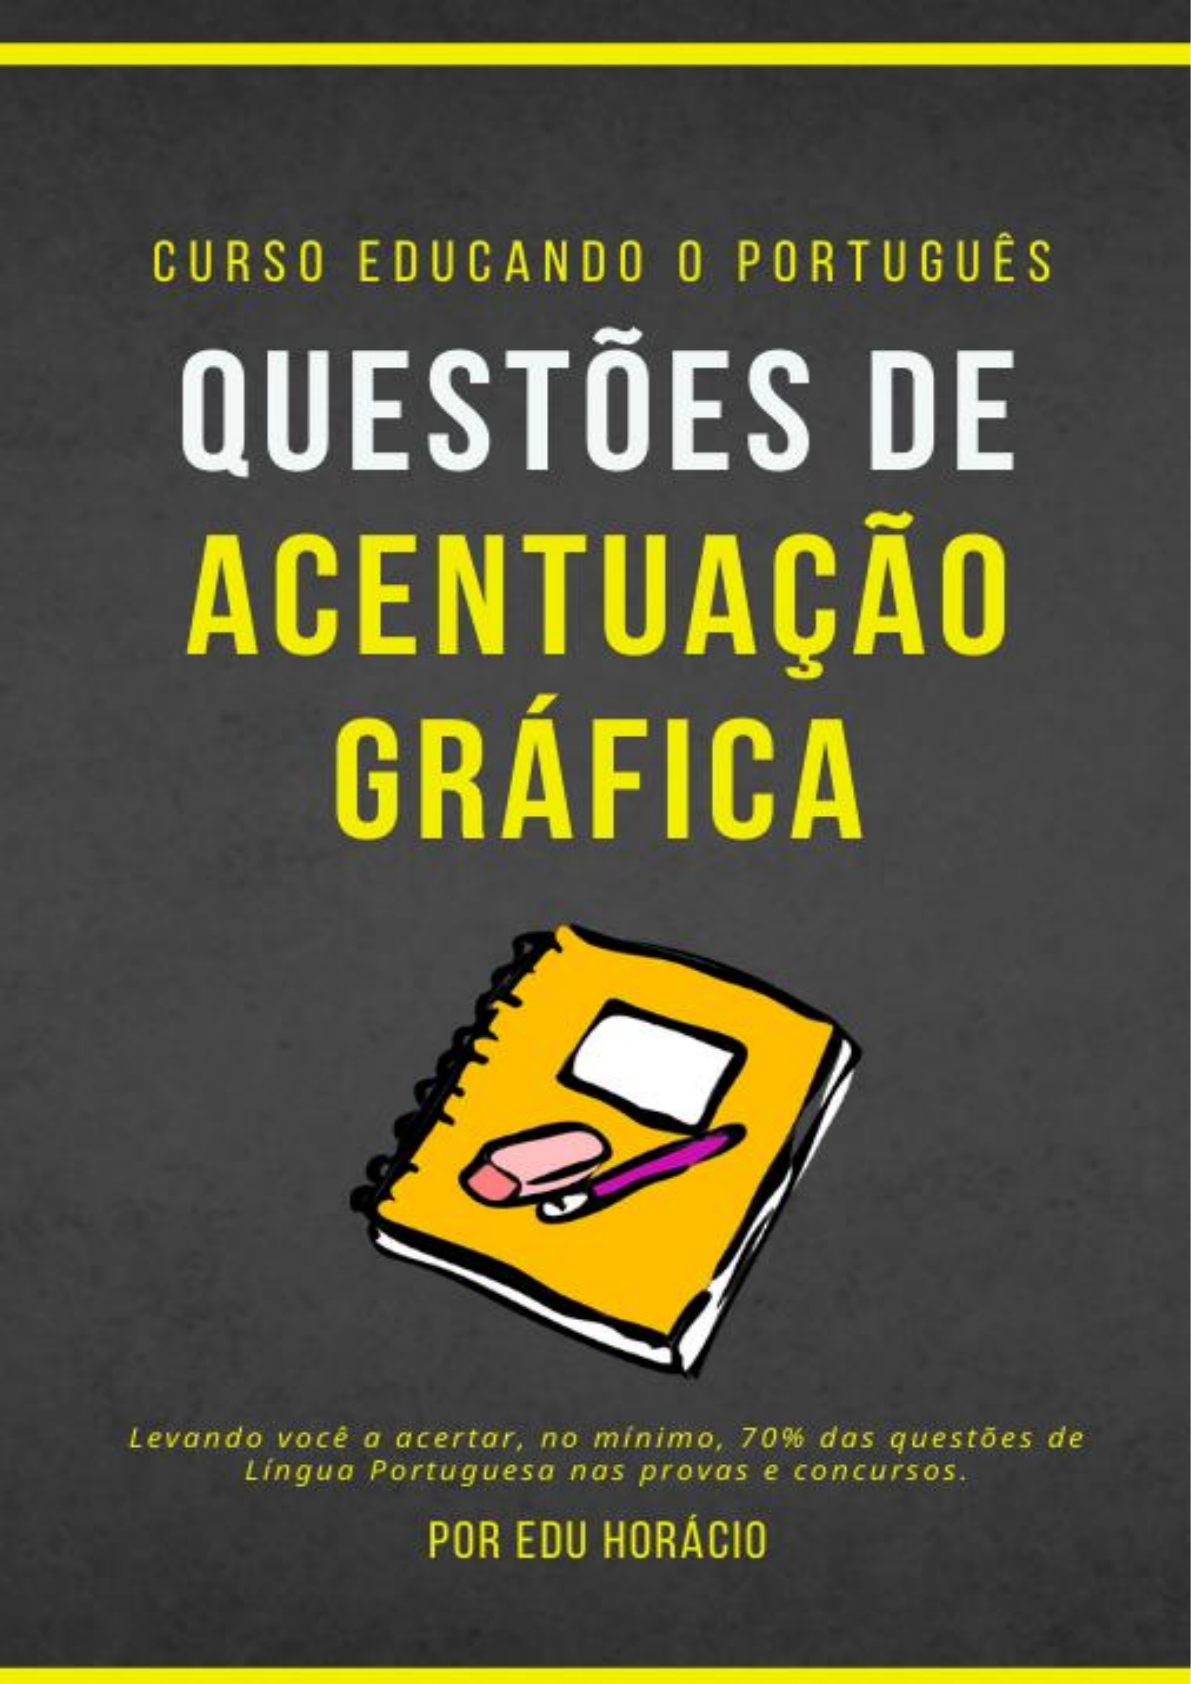 Acentuação gráfica: regras gerais e exemplos - Brasil Escola